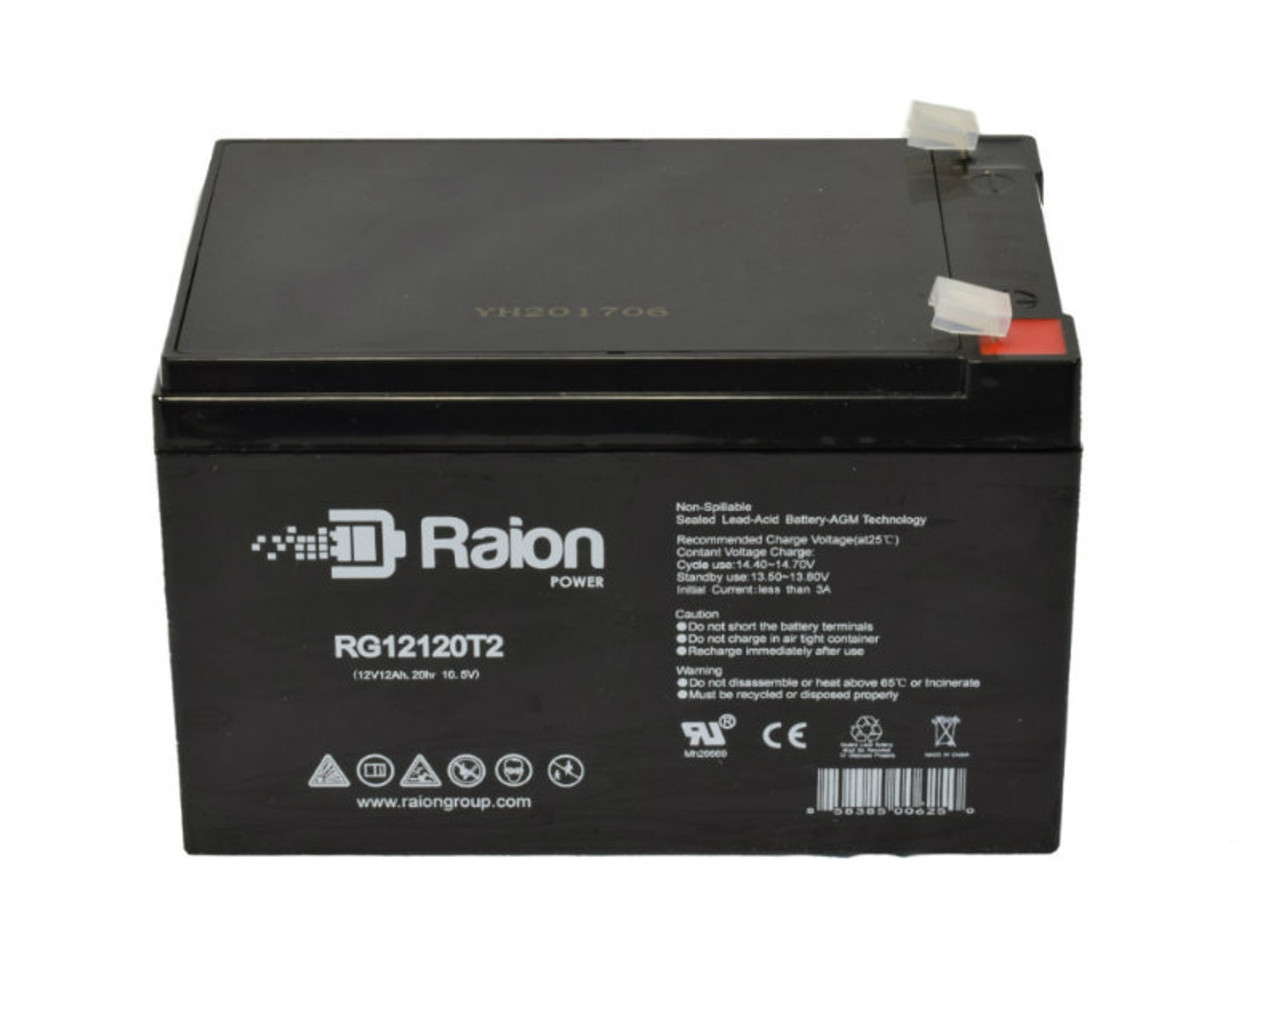 Raion Power RG12120T2 SLA Battery for Spinshot Lite